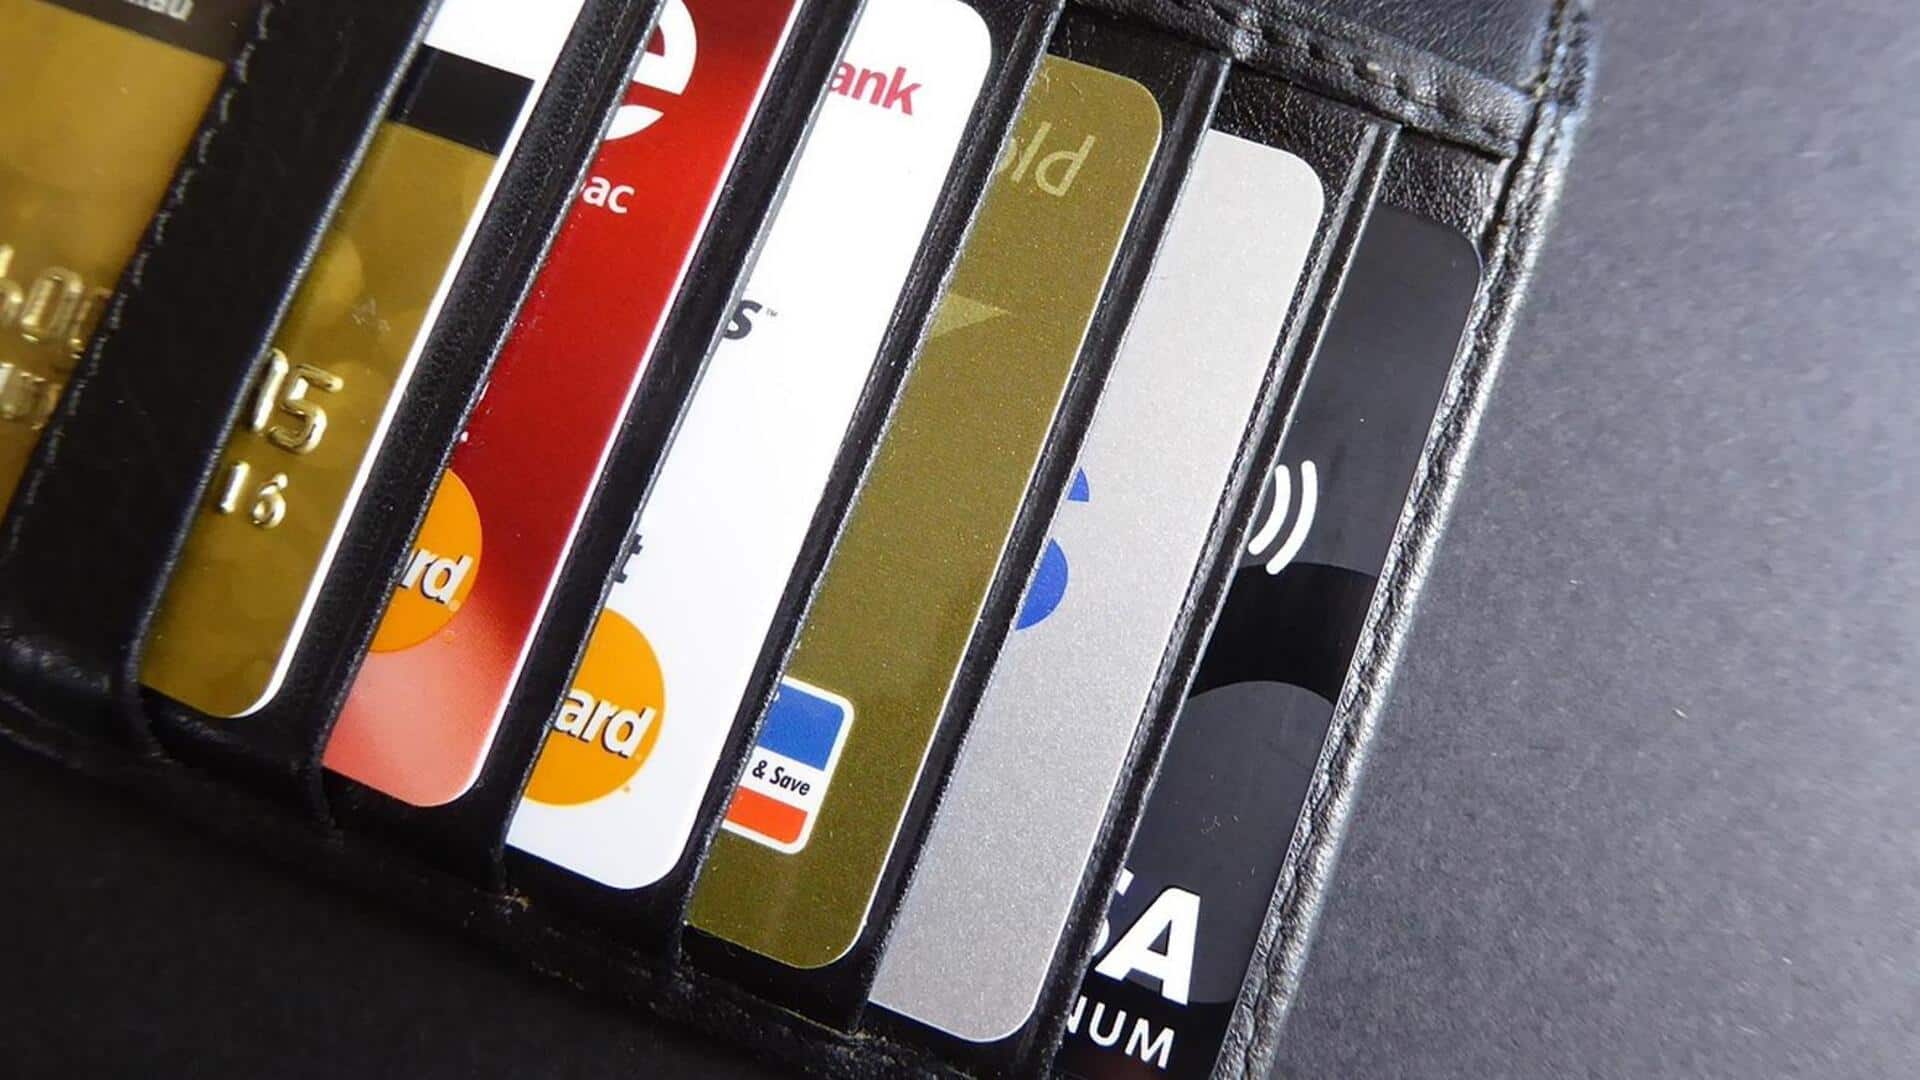 1 अप्रैल से क्रेडिट कार्ड के बदलेंगे नियम, इन बैंकों के ग्राहकों पर पड़ेगा असर 